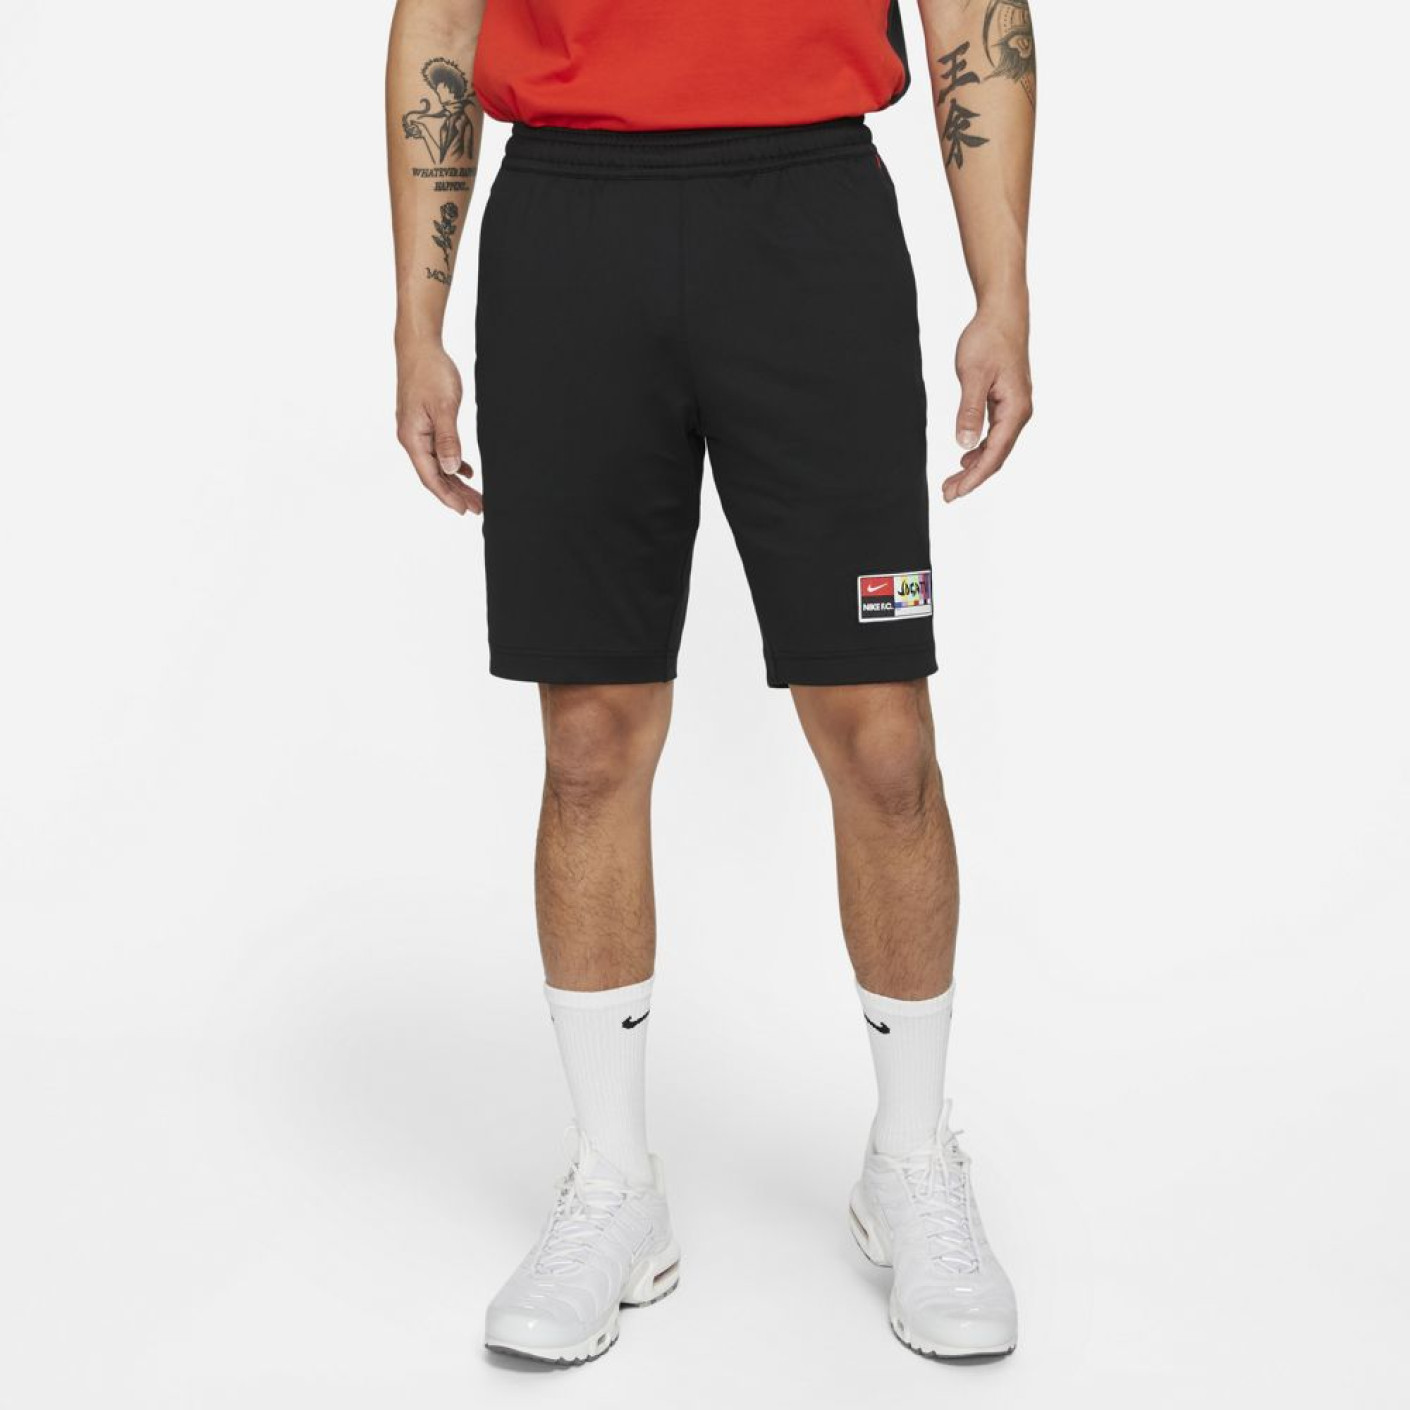 Nike F.C. Broekje Zwart Rood